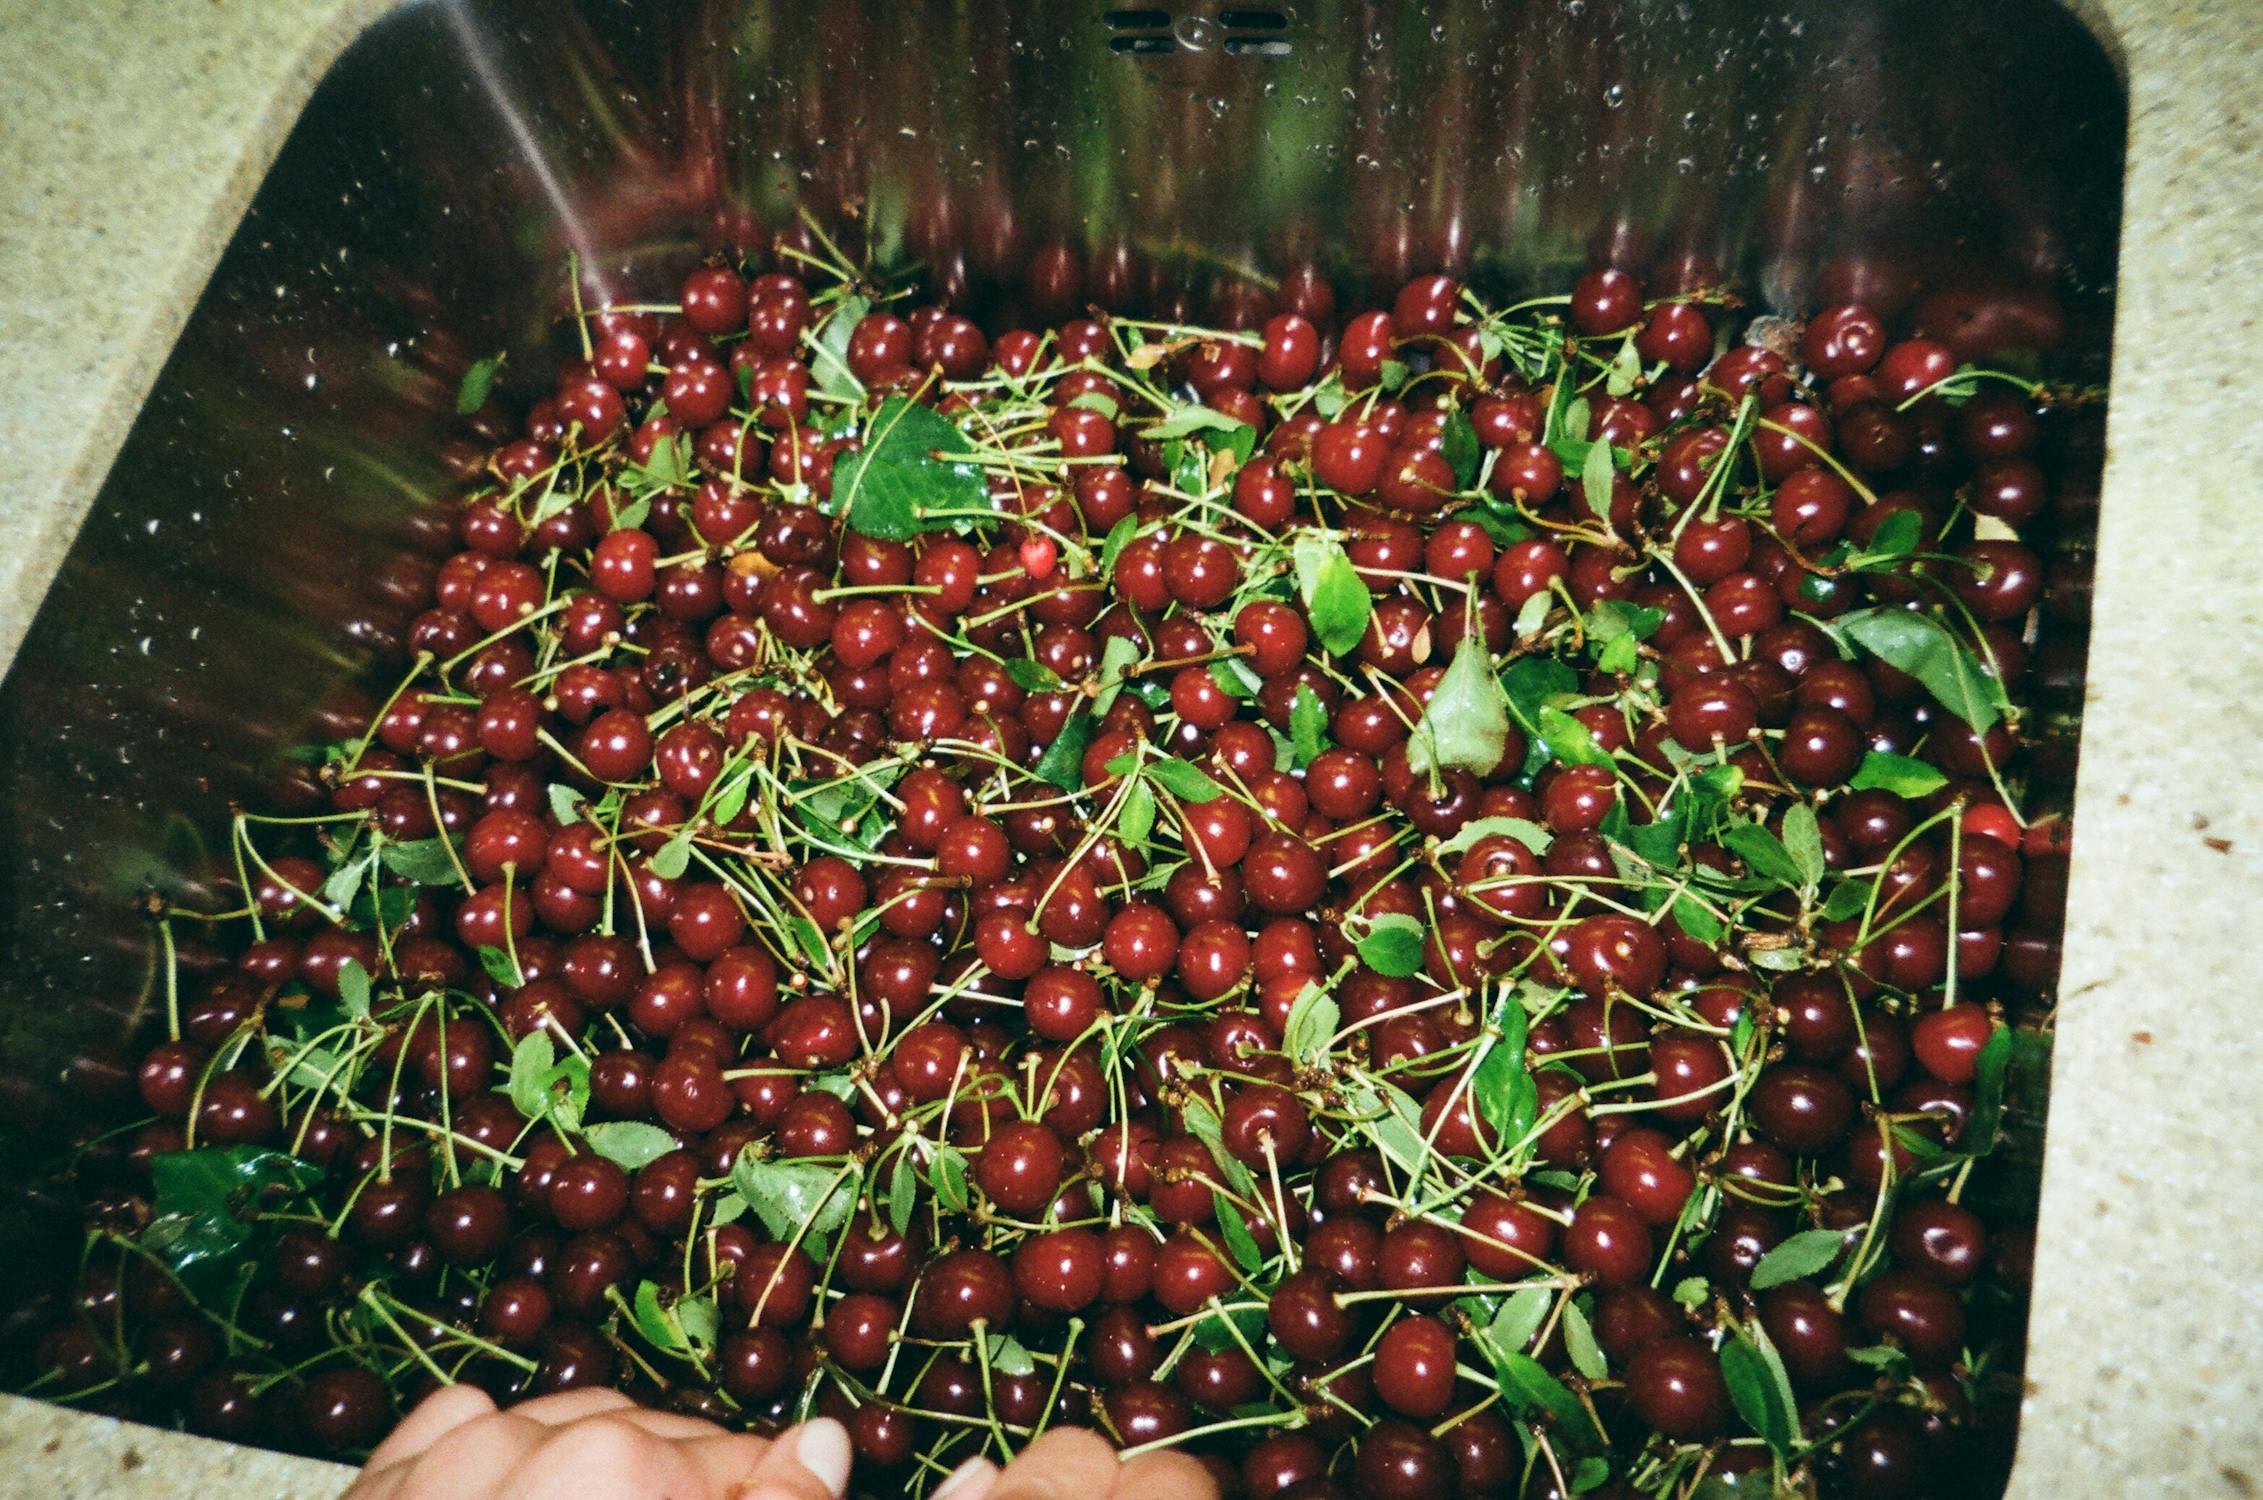 Red Cherries · Free Stock Photo